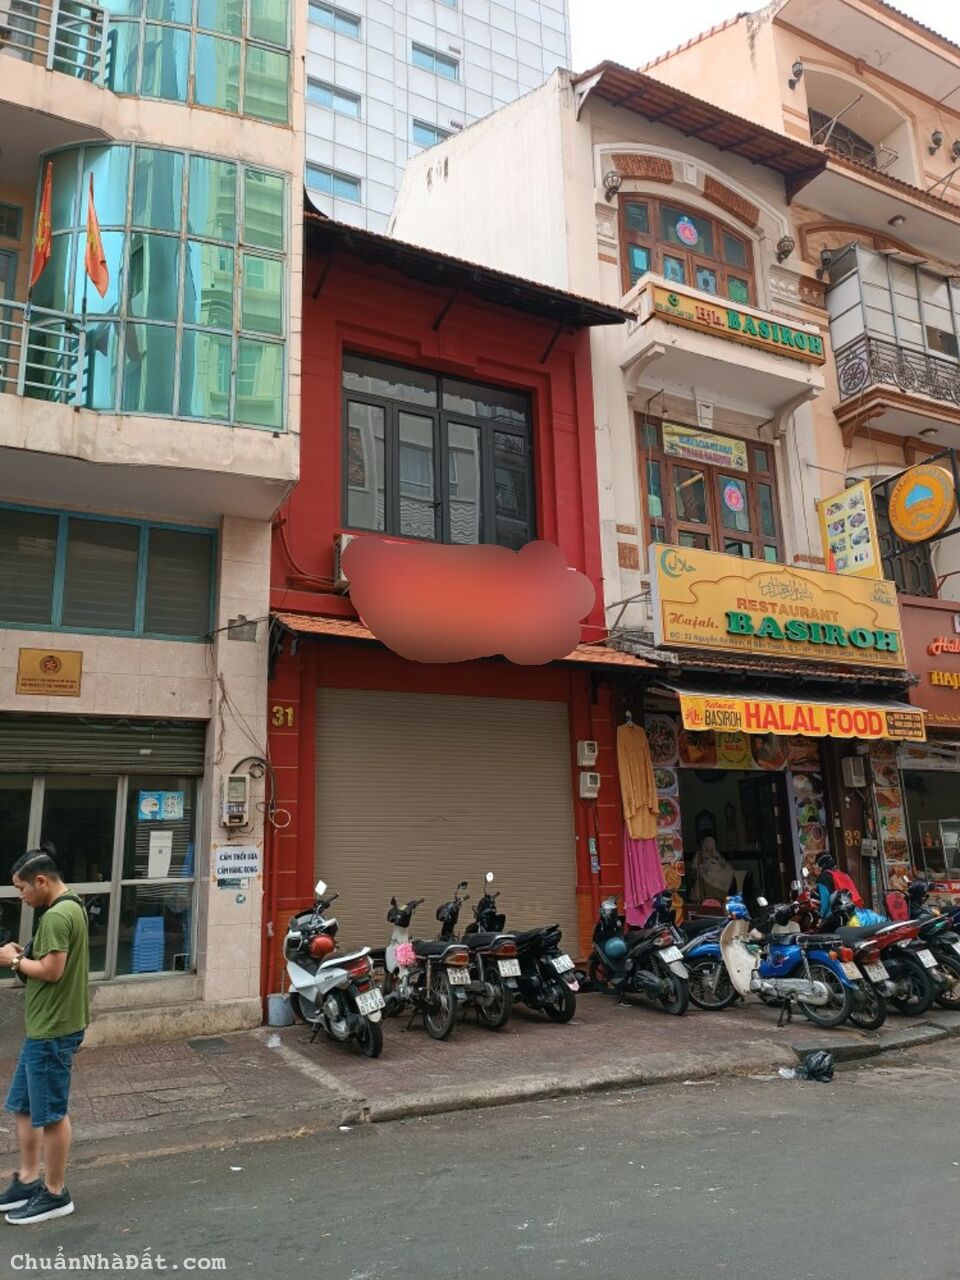 Bán nhà MT Nguyễn An Ninh, Cửa Tây chợ Bến Thành, KD sầm uất. 4x17. Giá 75 tỷ